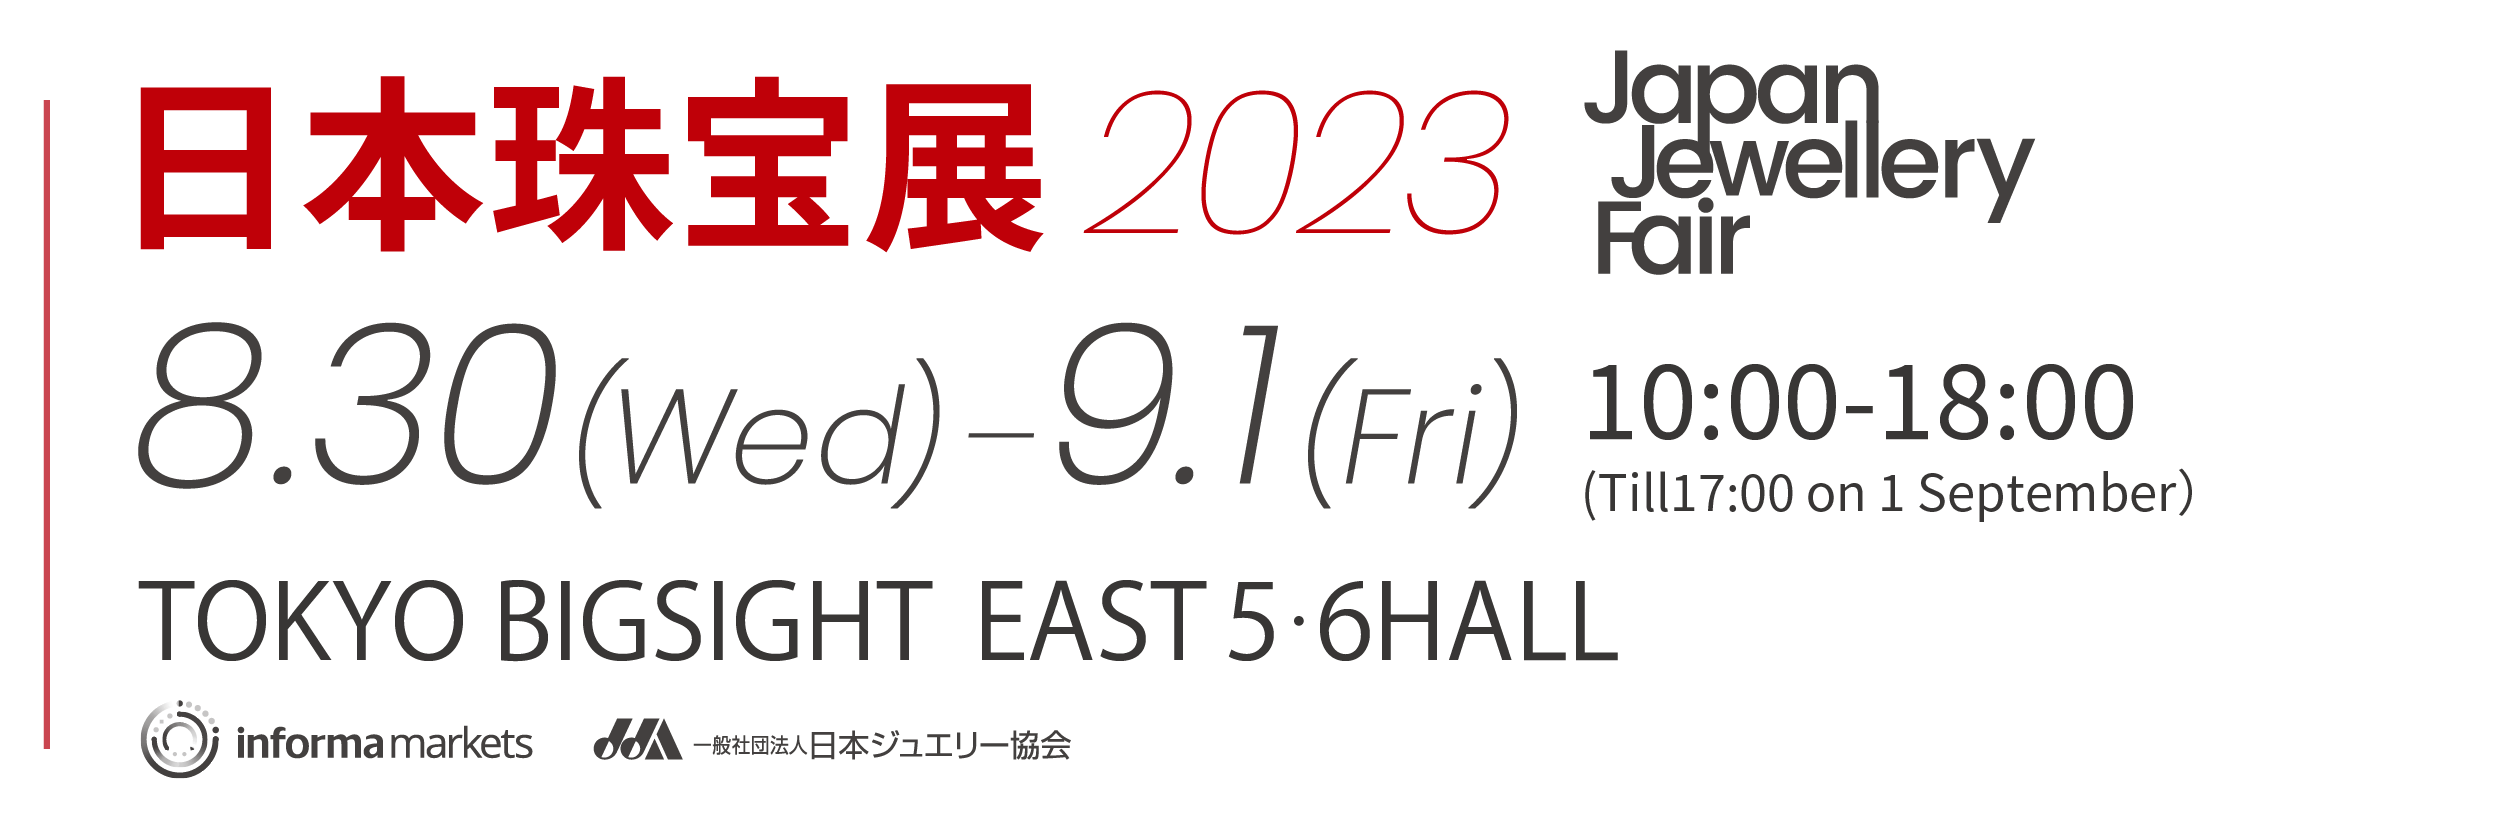 日本珠宝展 2023年8月30至9月1日